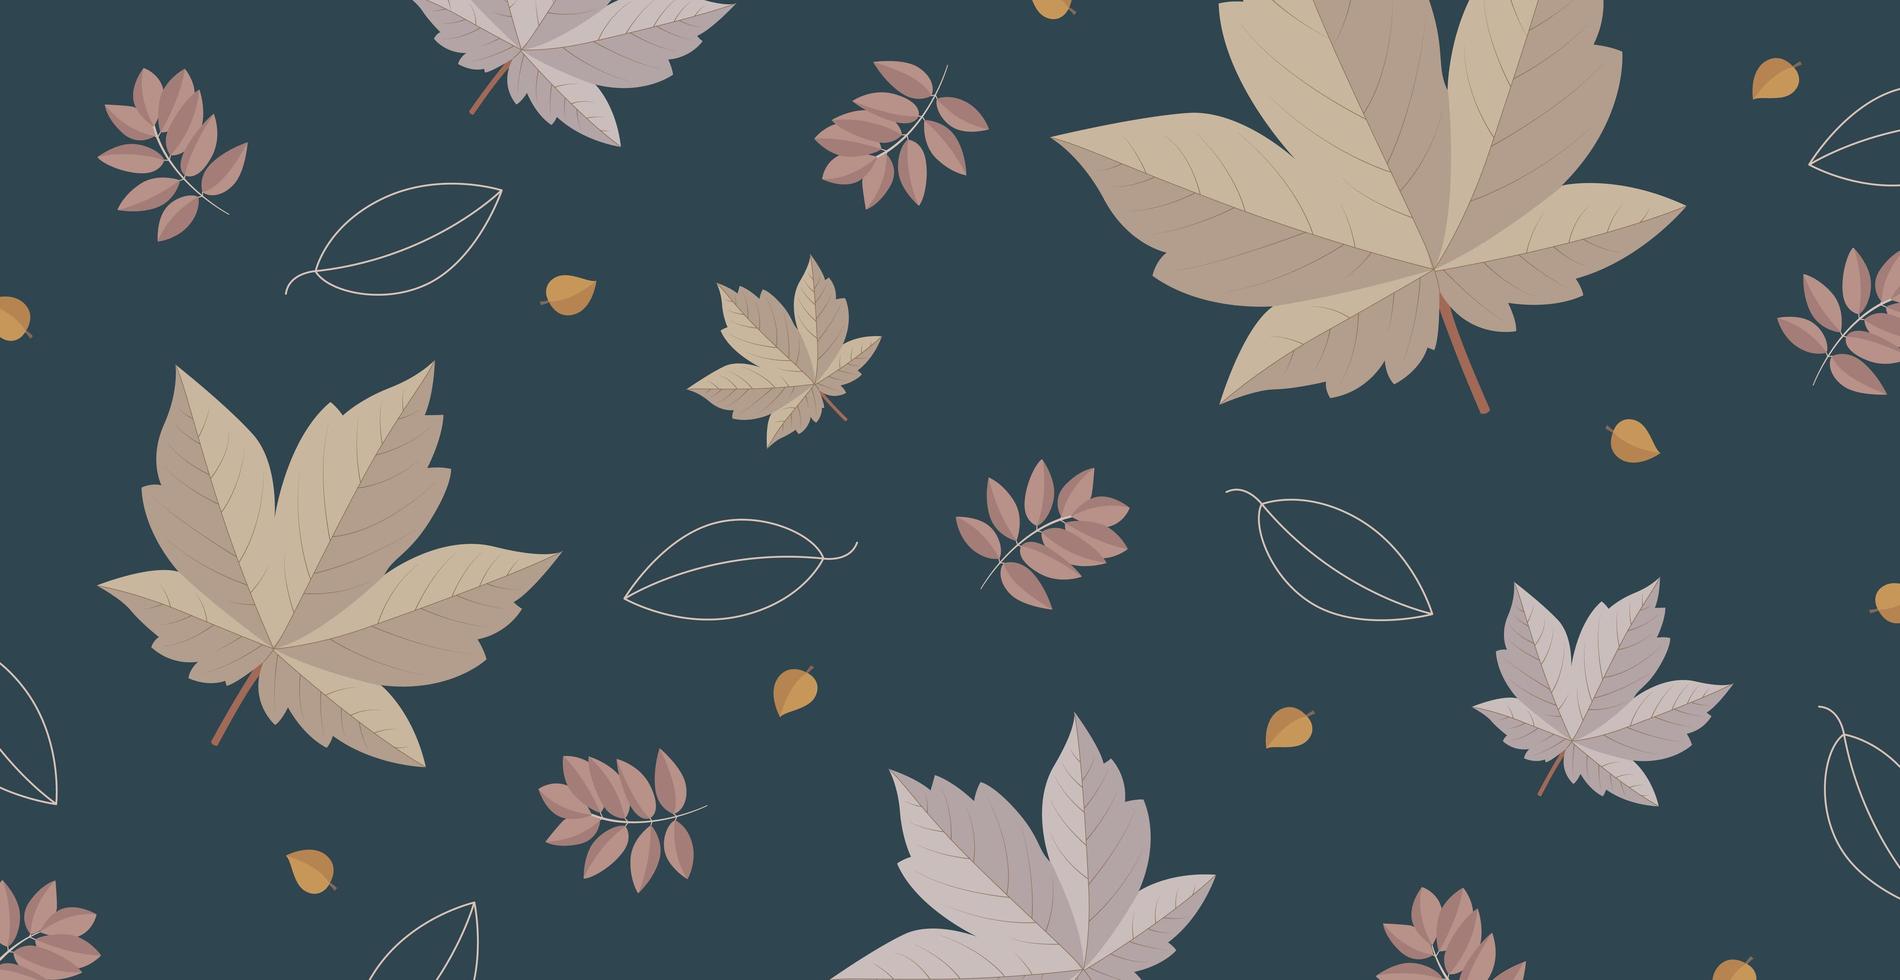 modelo abstrato de fundo da web de outono com muitas folhas diferentes - vetor